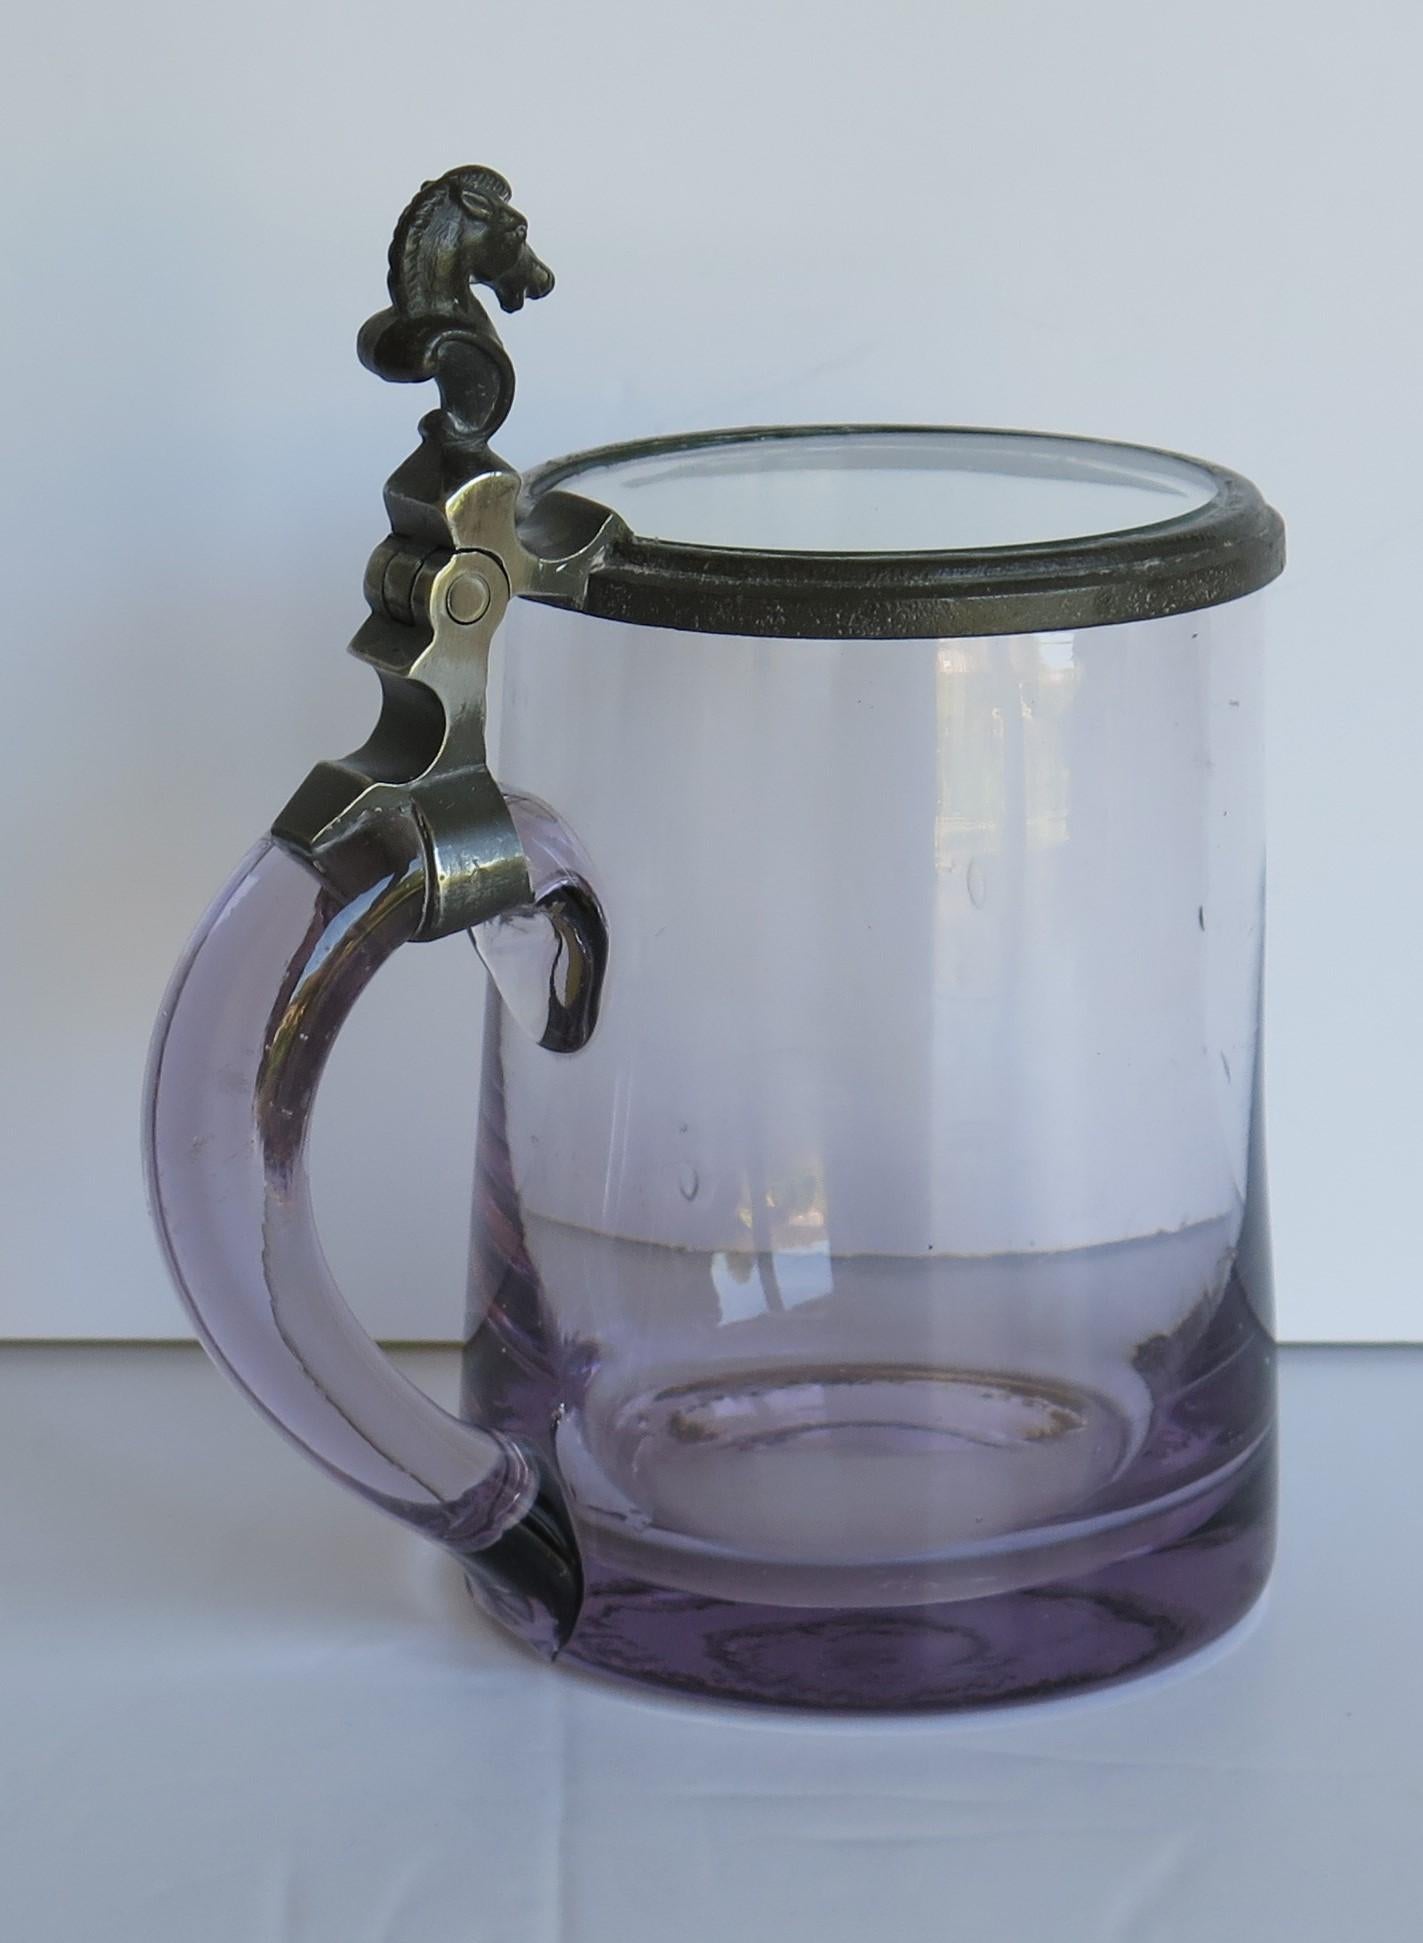 hinged lid drinking vessel